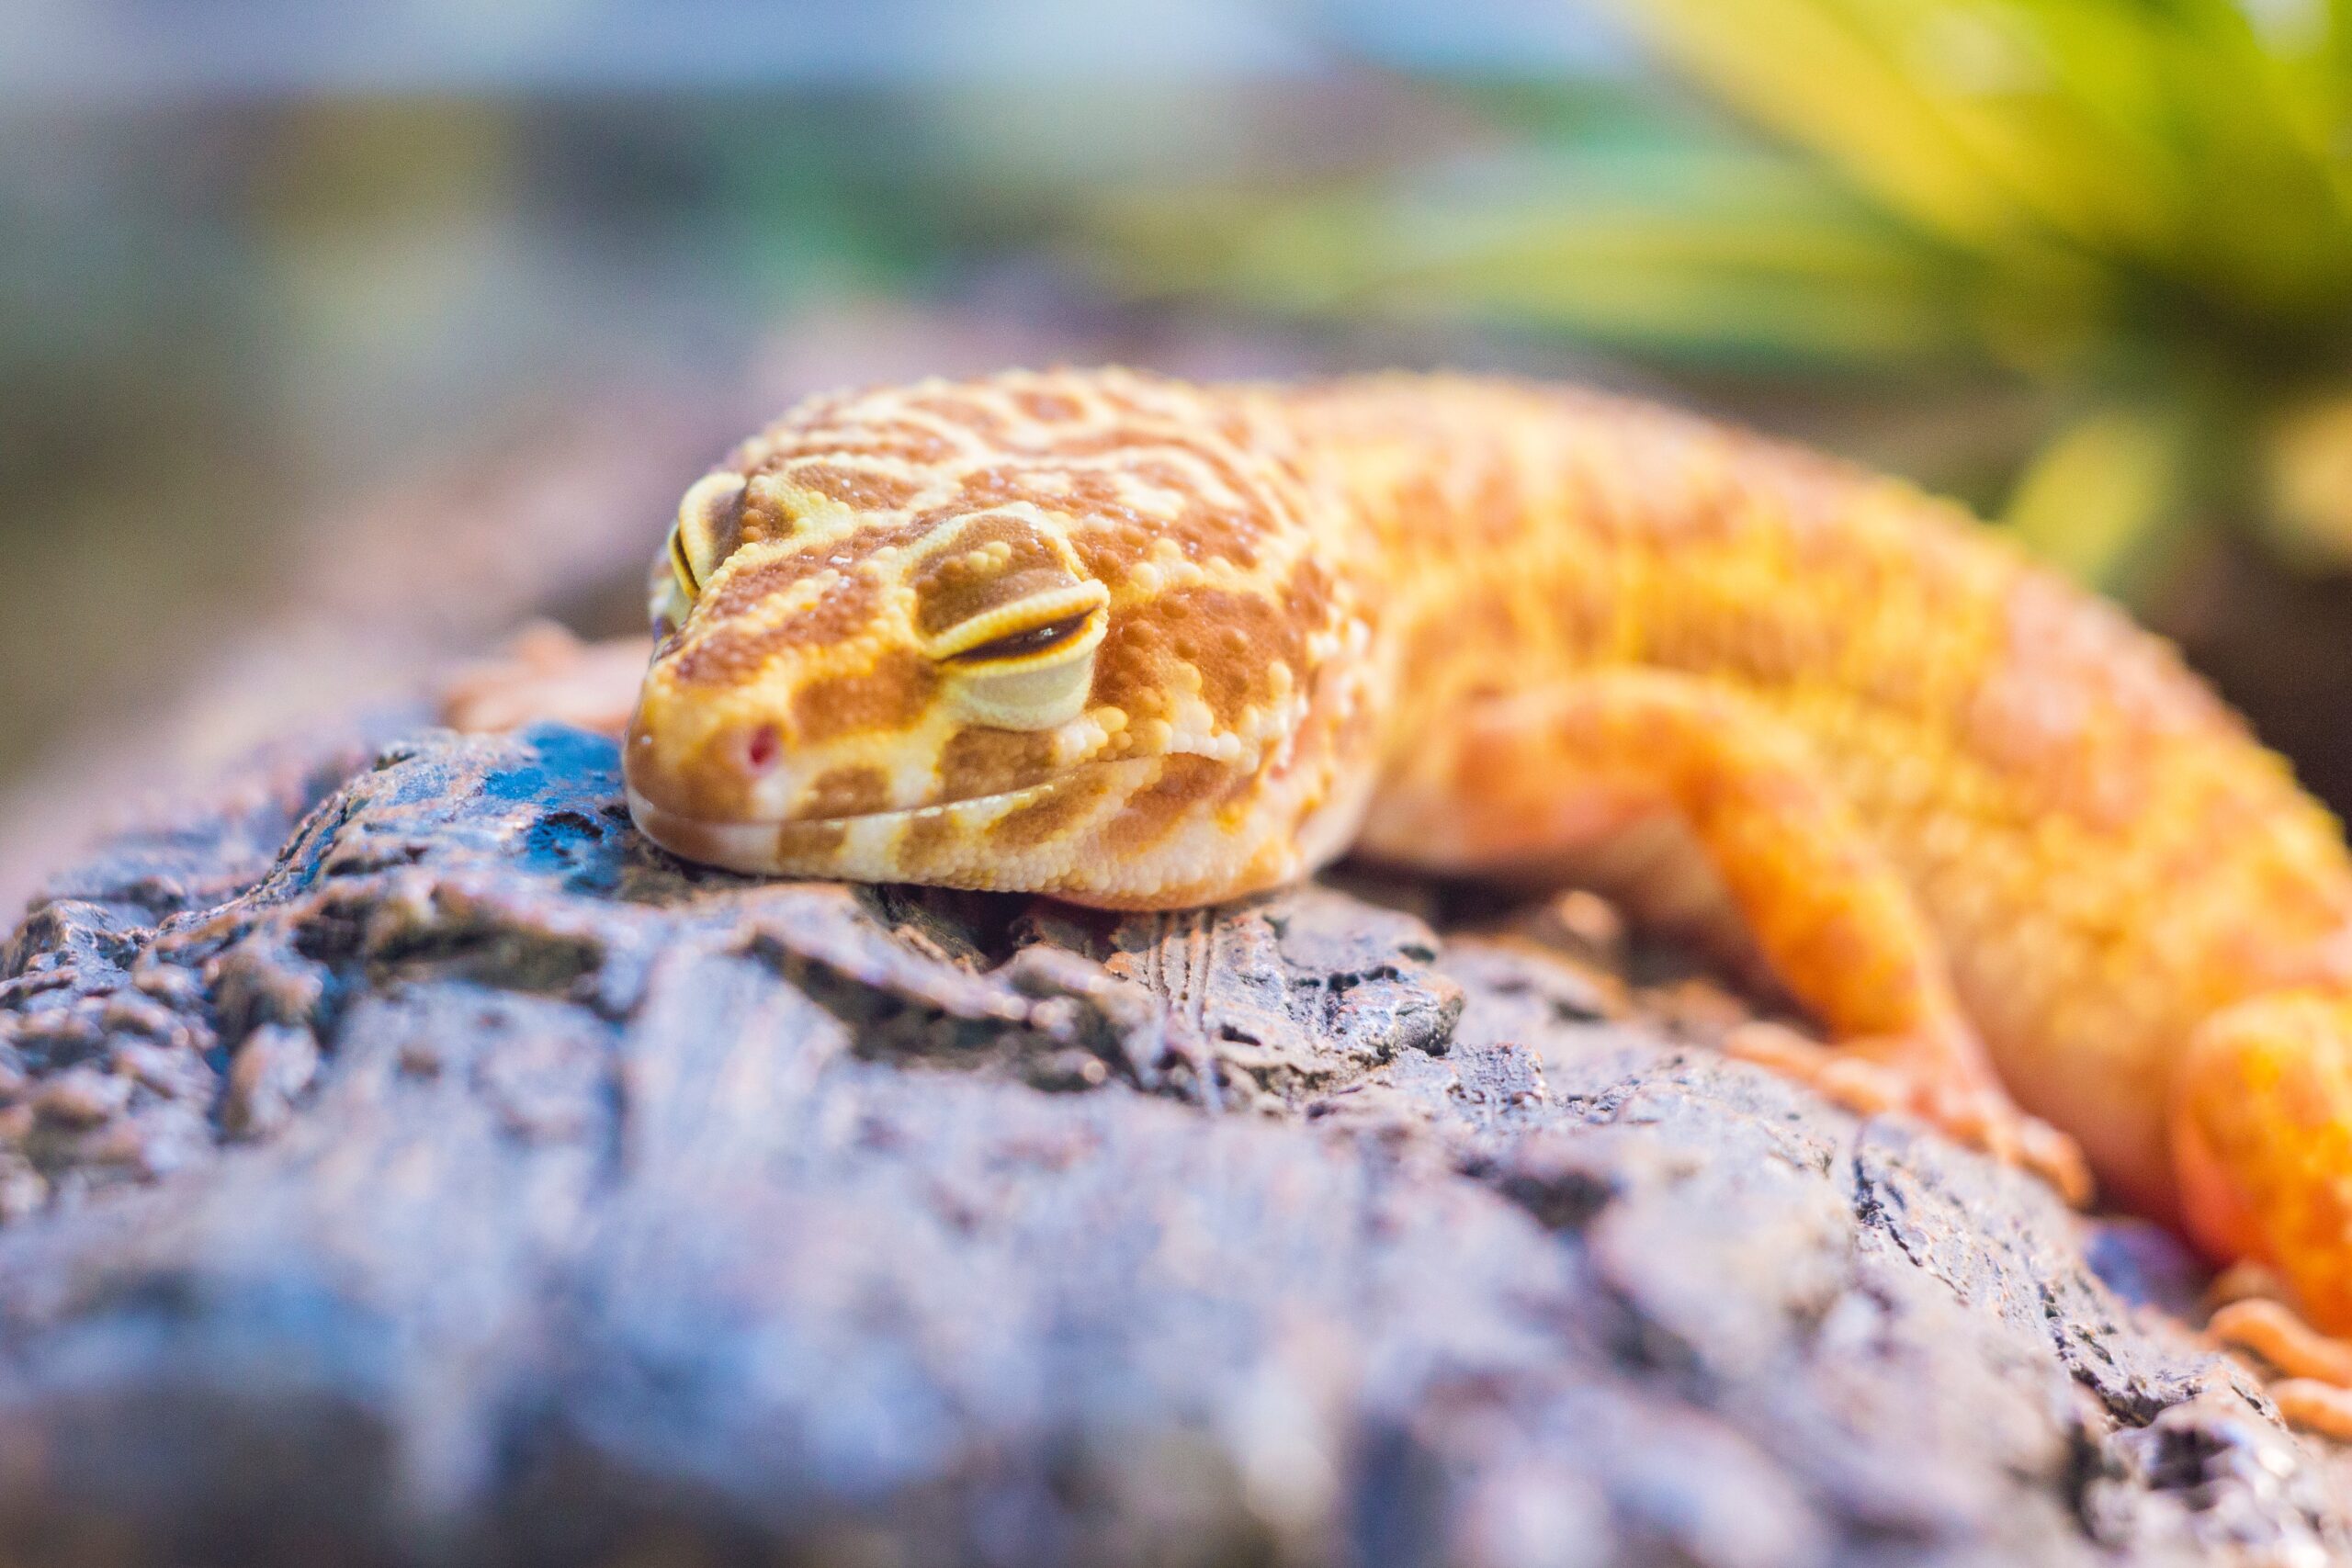 Gecko sleeping